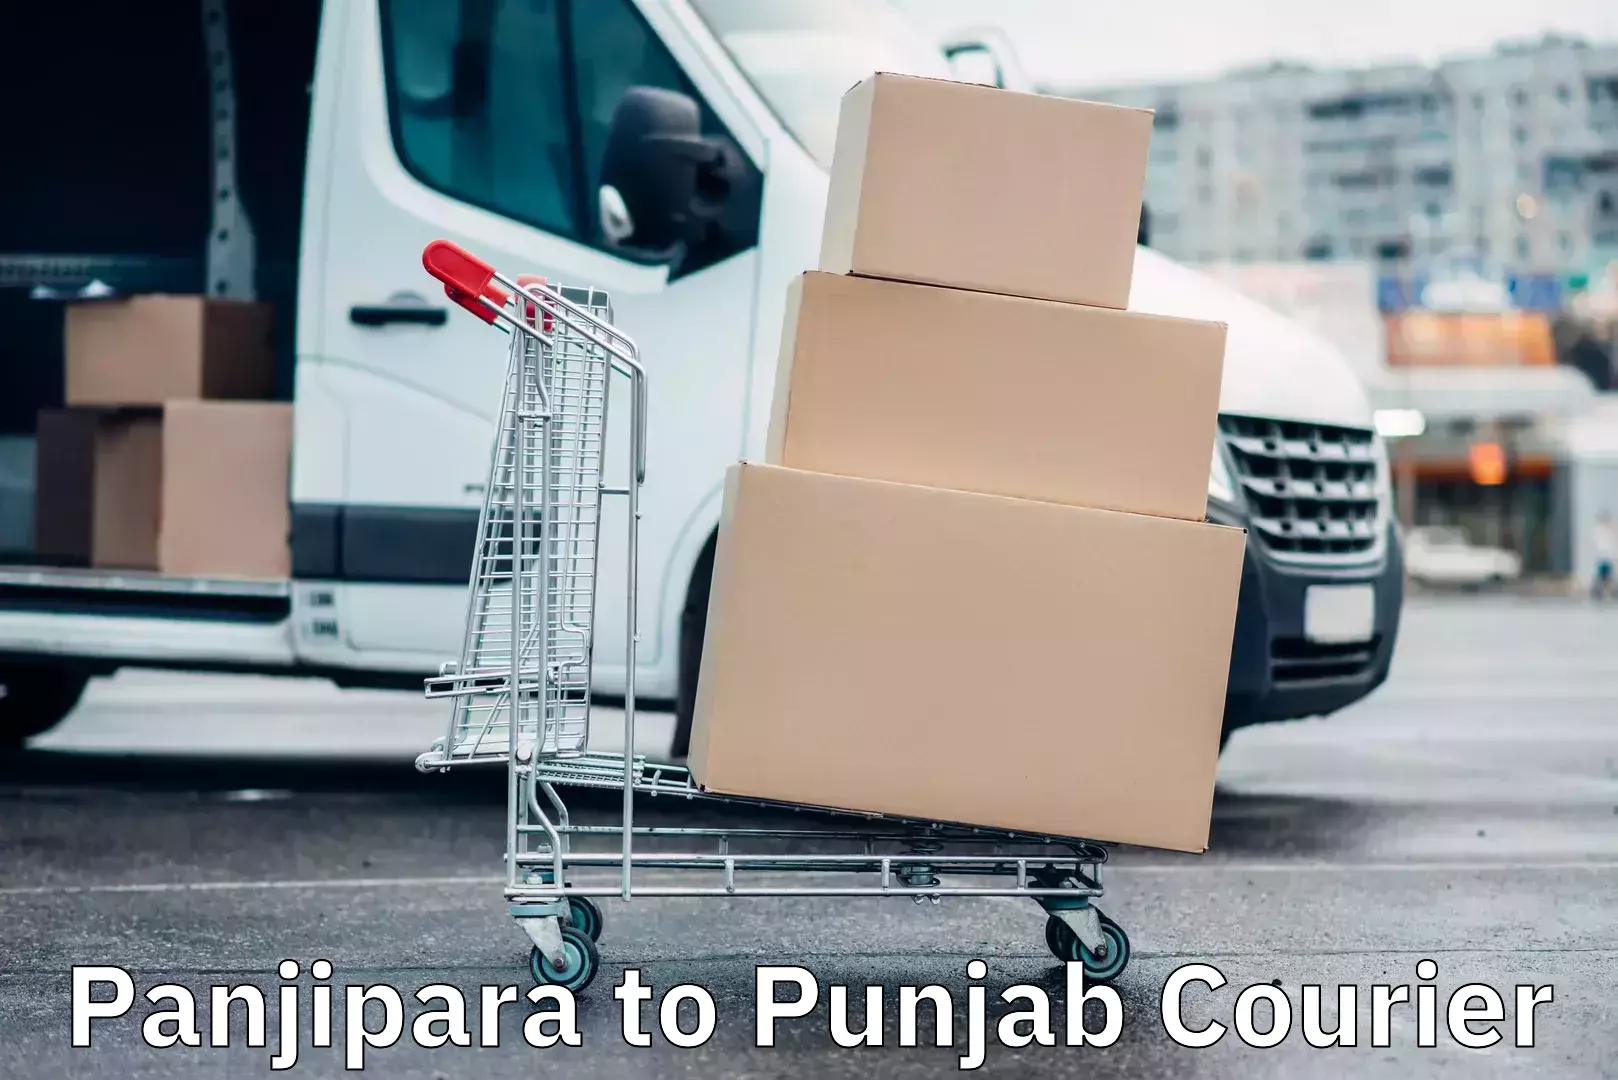 Bulk logistics Panjipara to Punjab